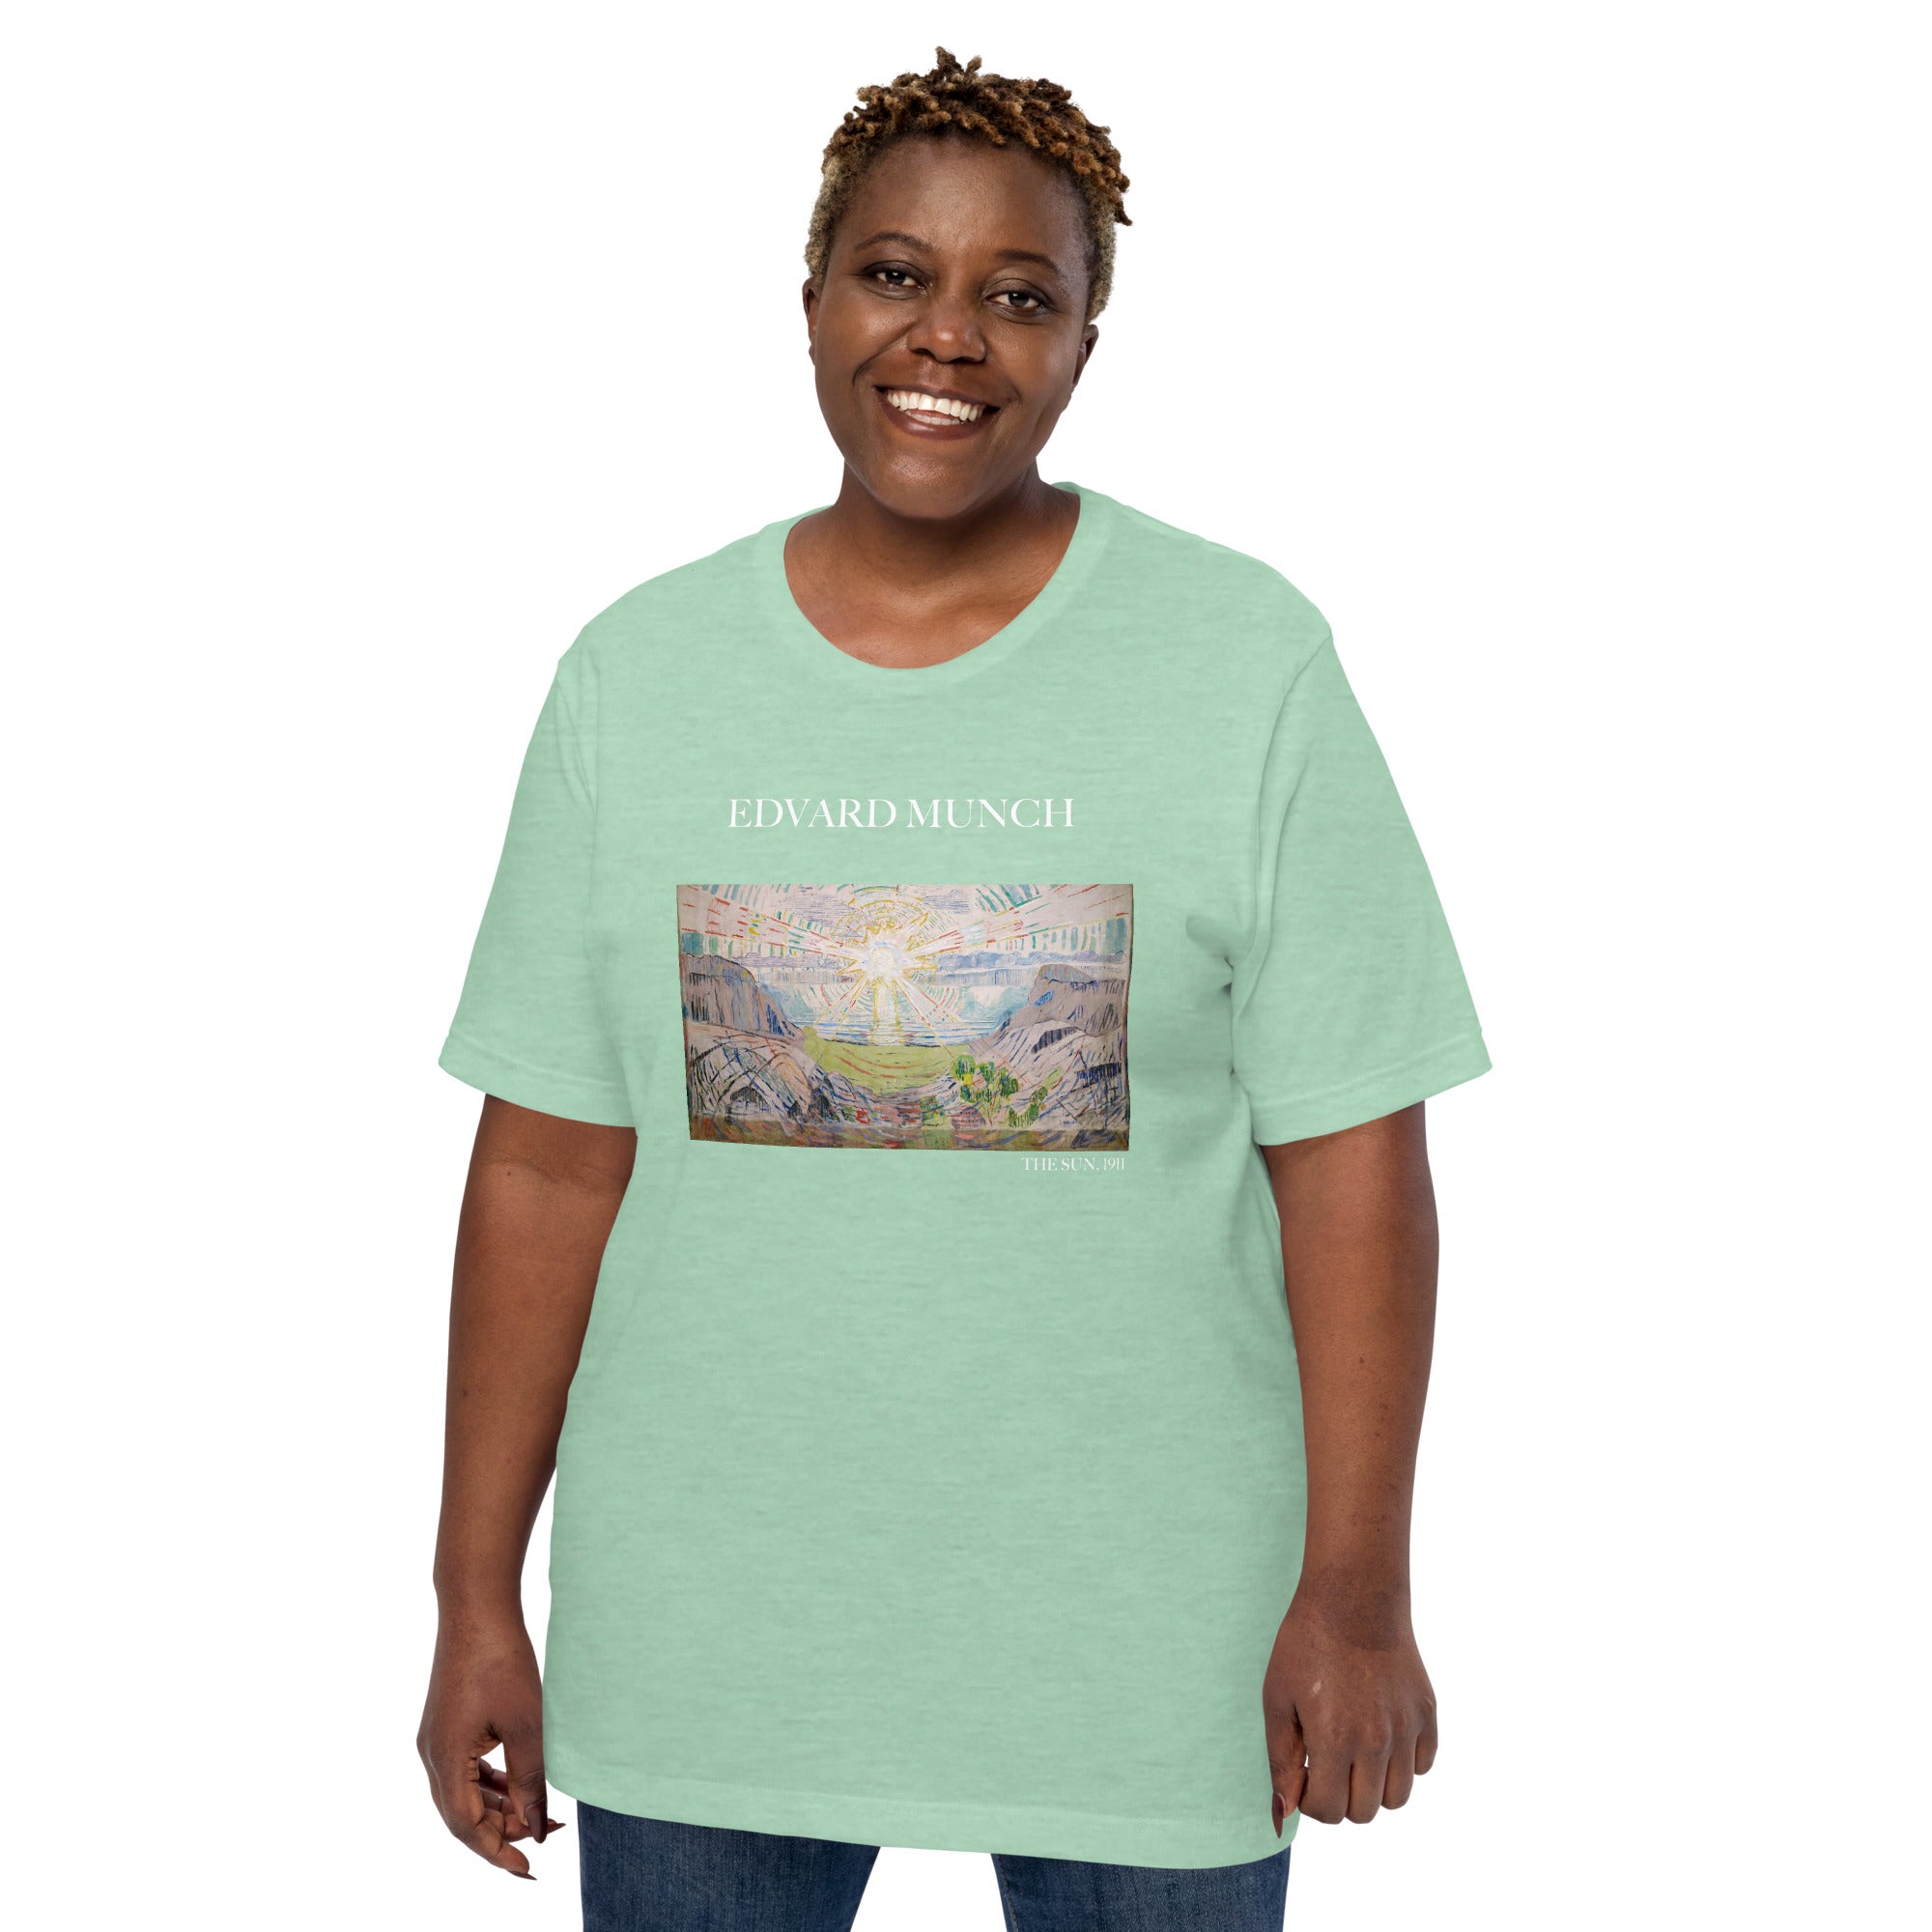 T-Shirt mit berühmtem Gemälde „Die Sonne“ von Edvard Munch | Unisex-T-Shirt im klassischen Kunststil